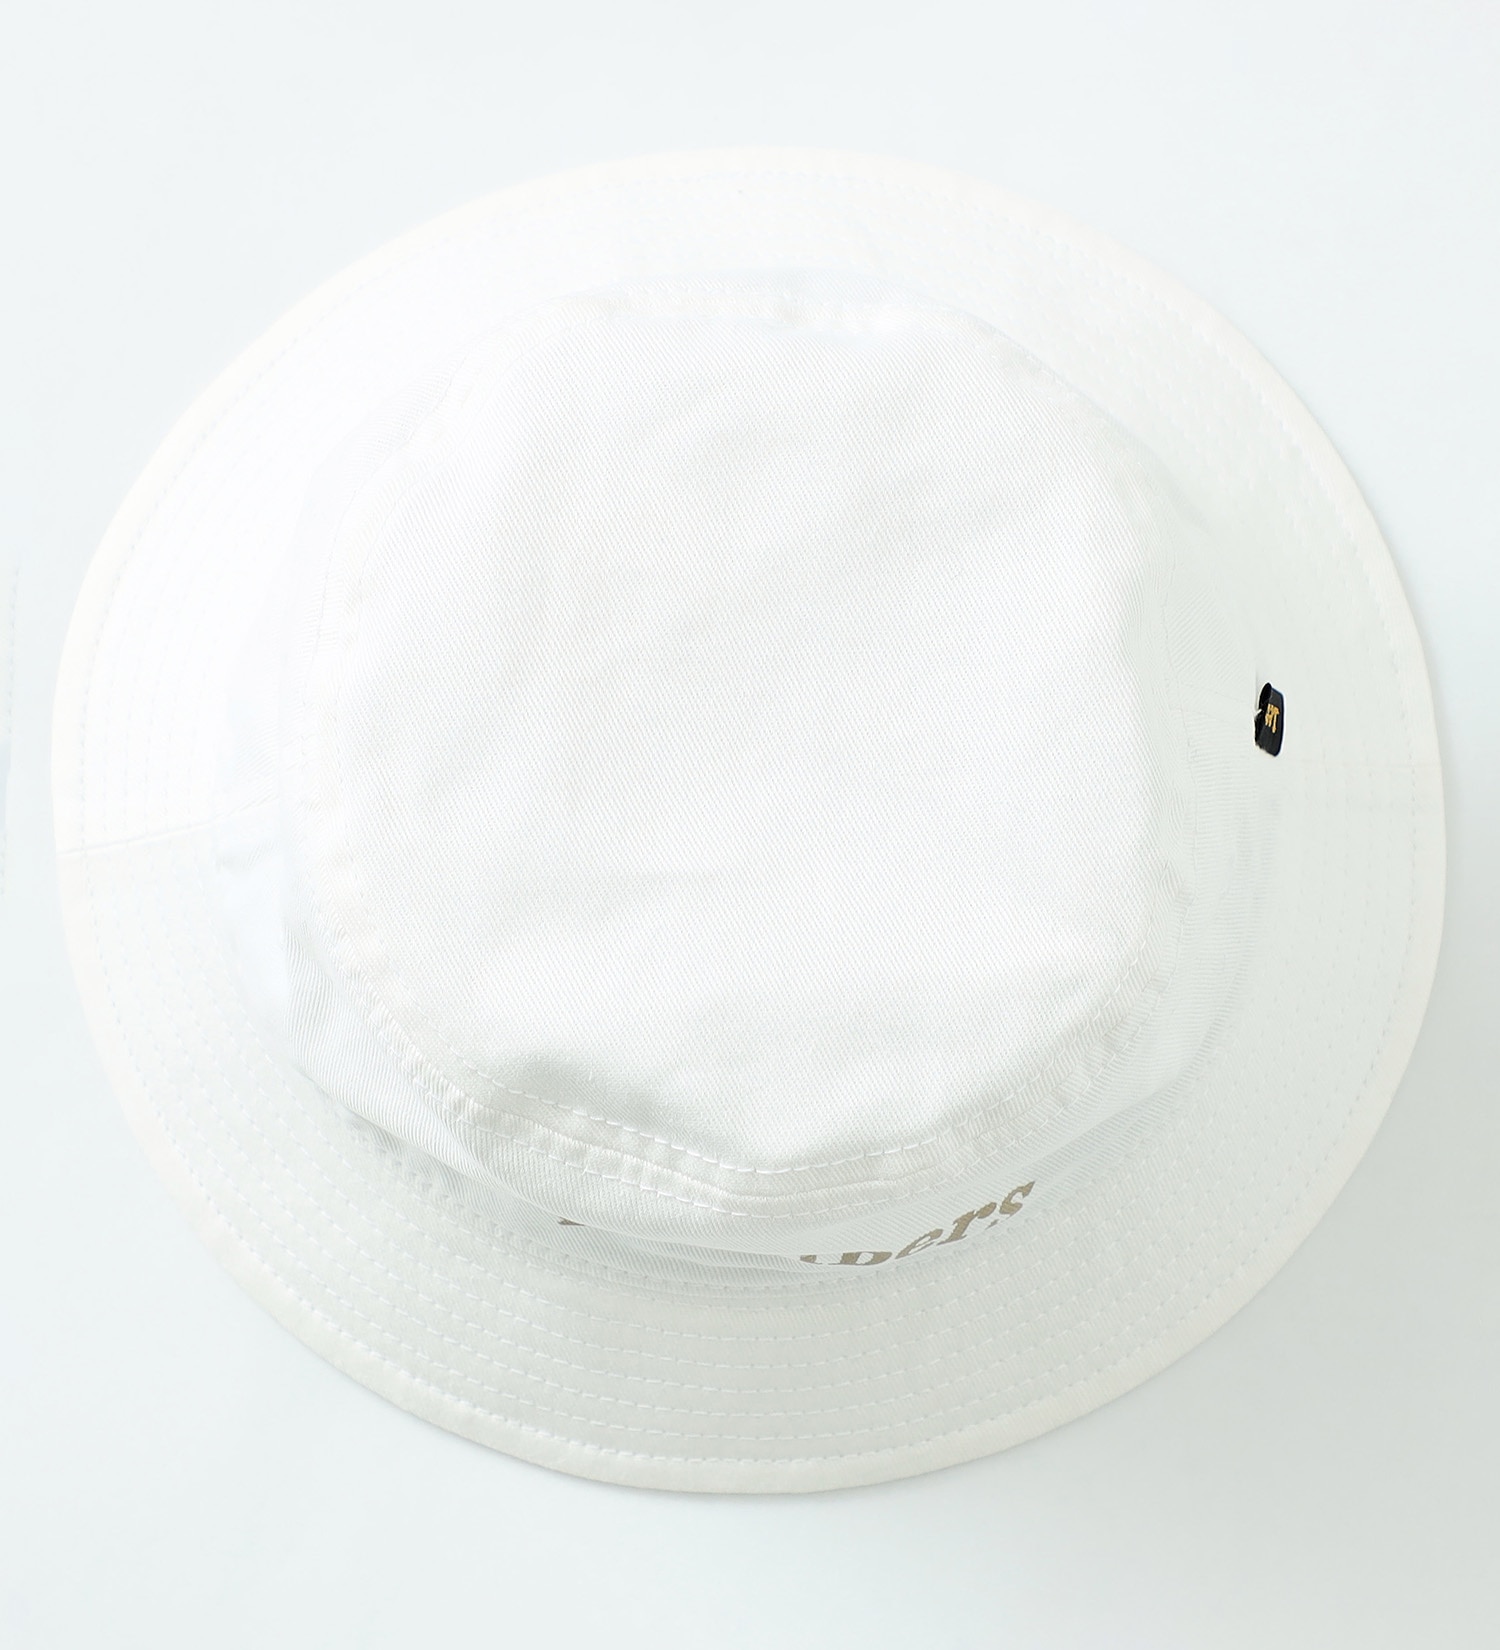 Lee(リー)のバケットハット|帽子/ハット/メンズ|ホワイト